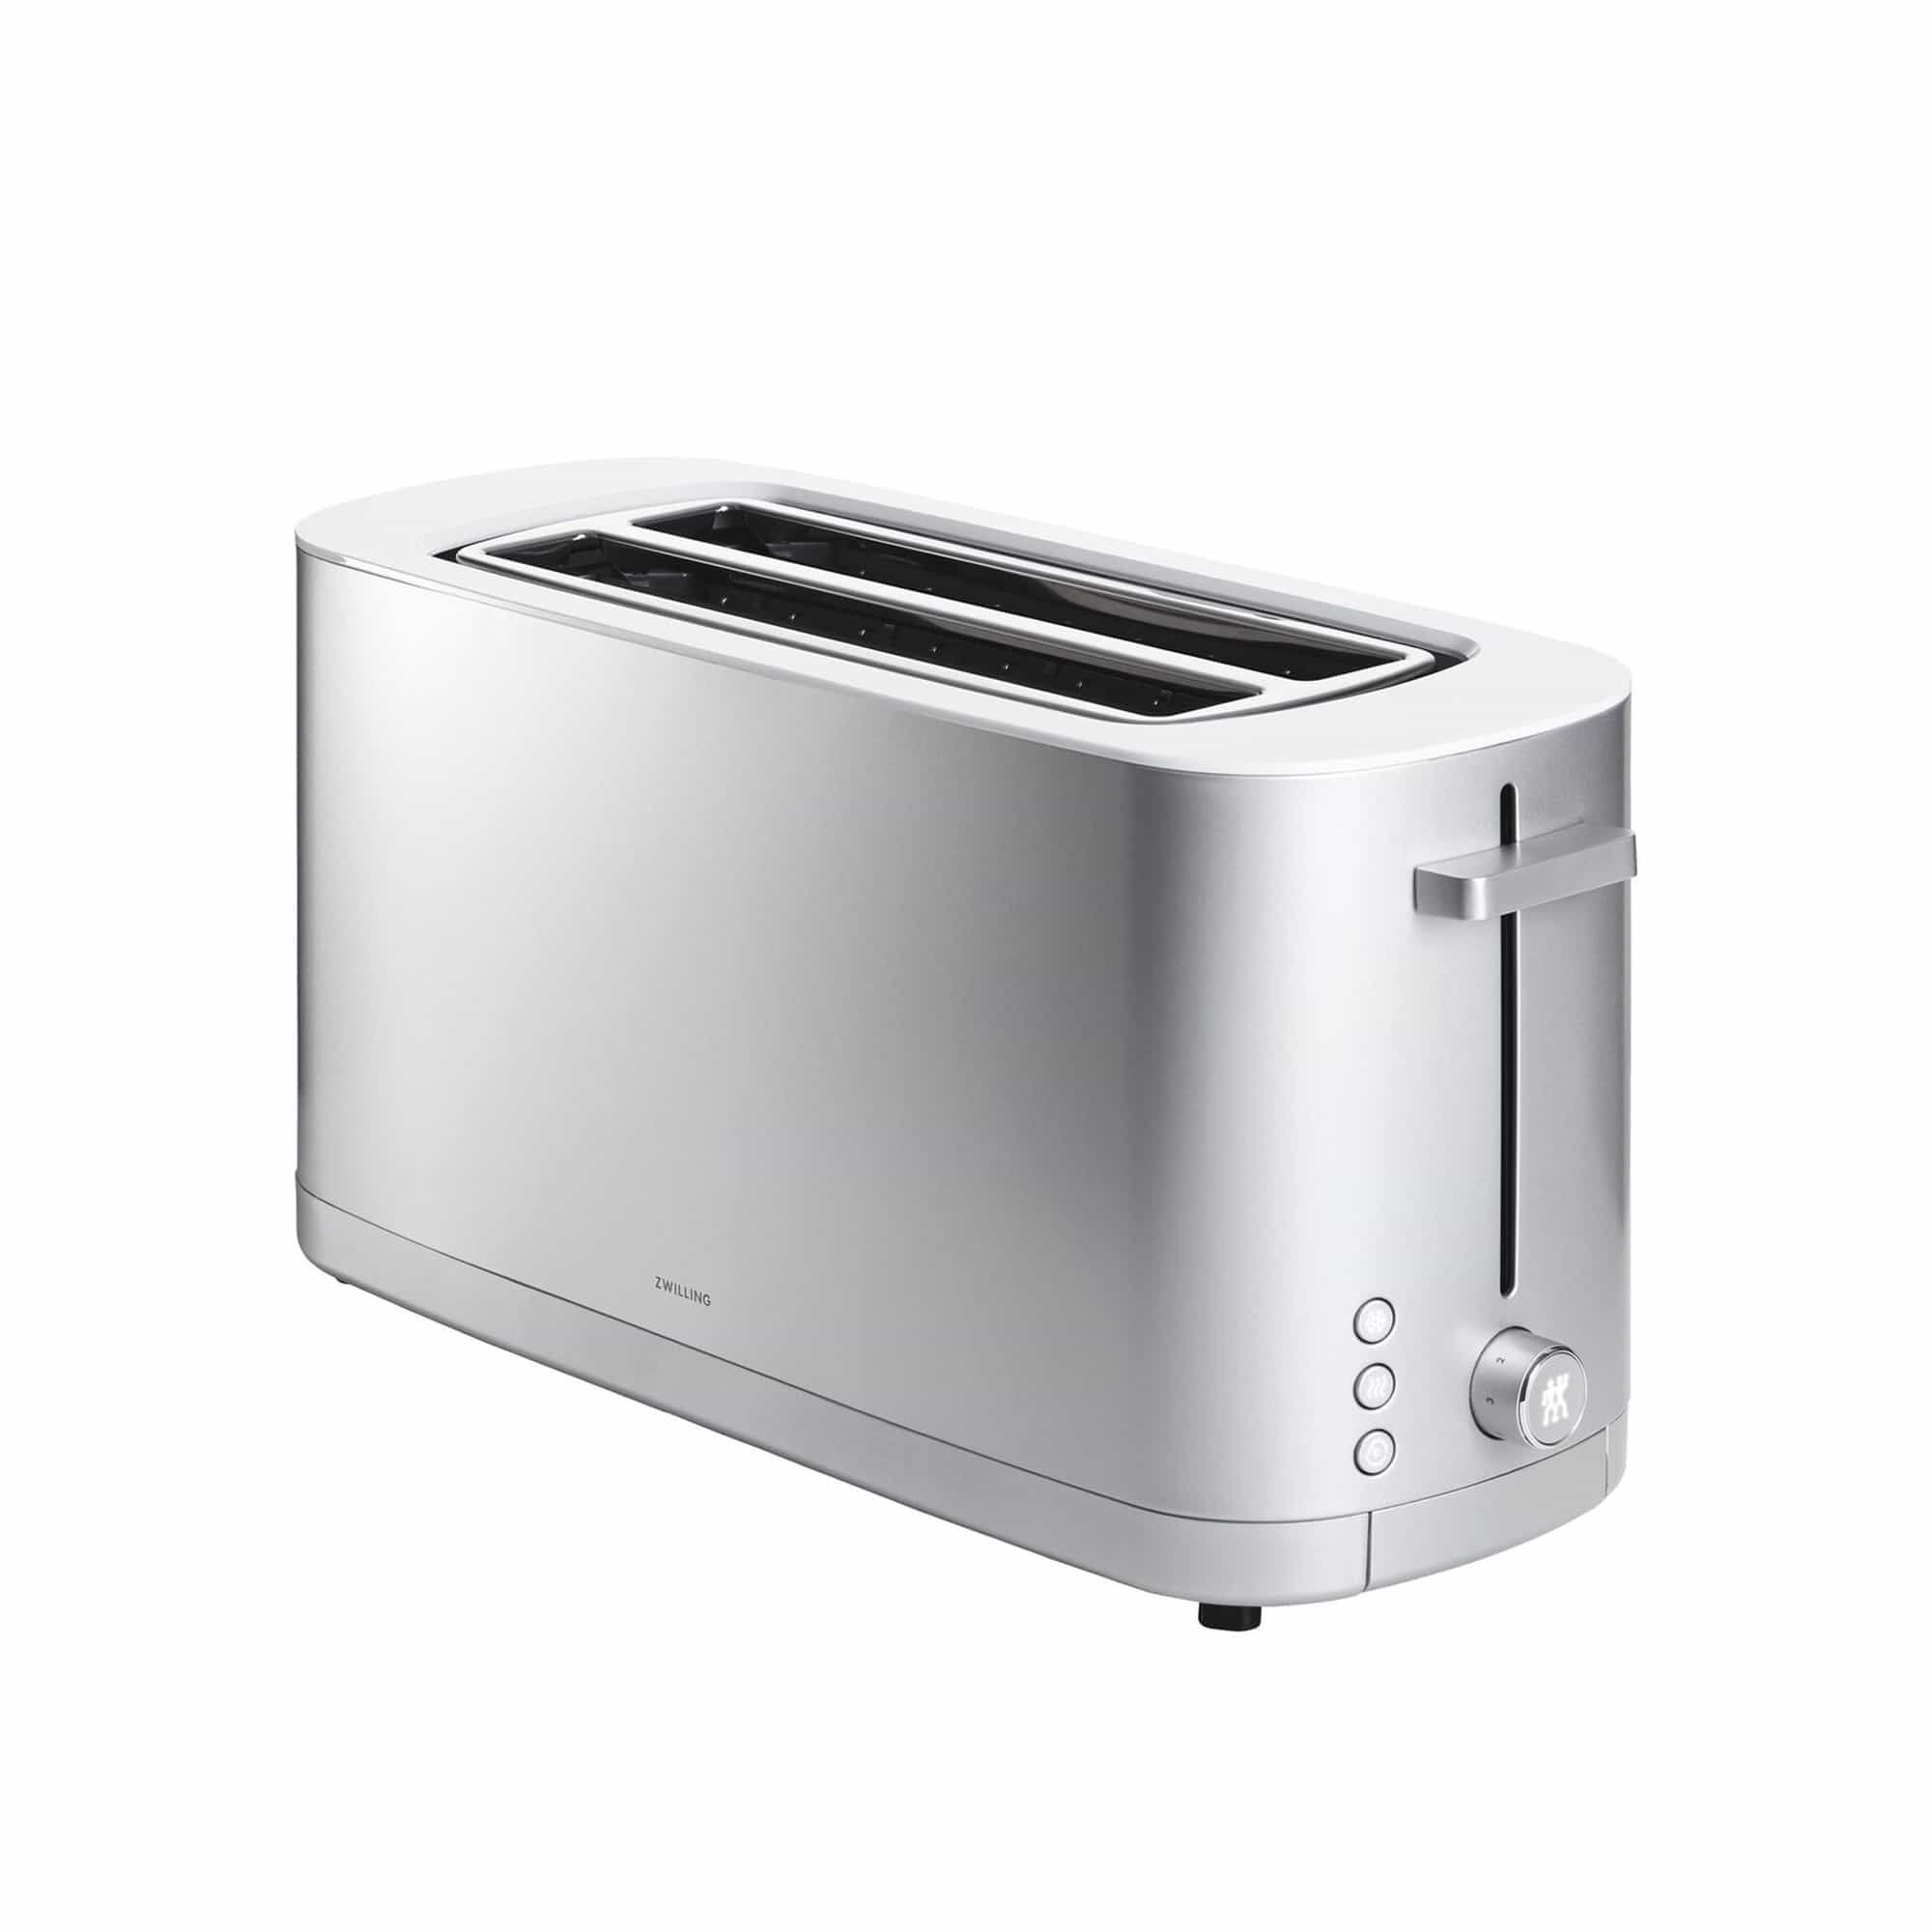 Enfinigy Toaster 4 skiver - Sølv